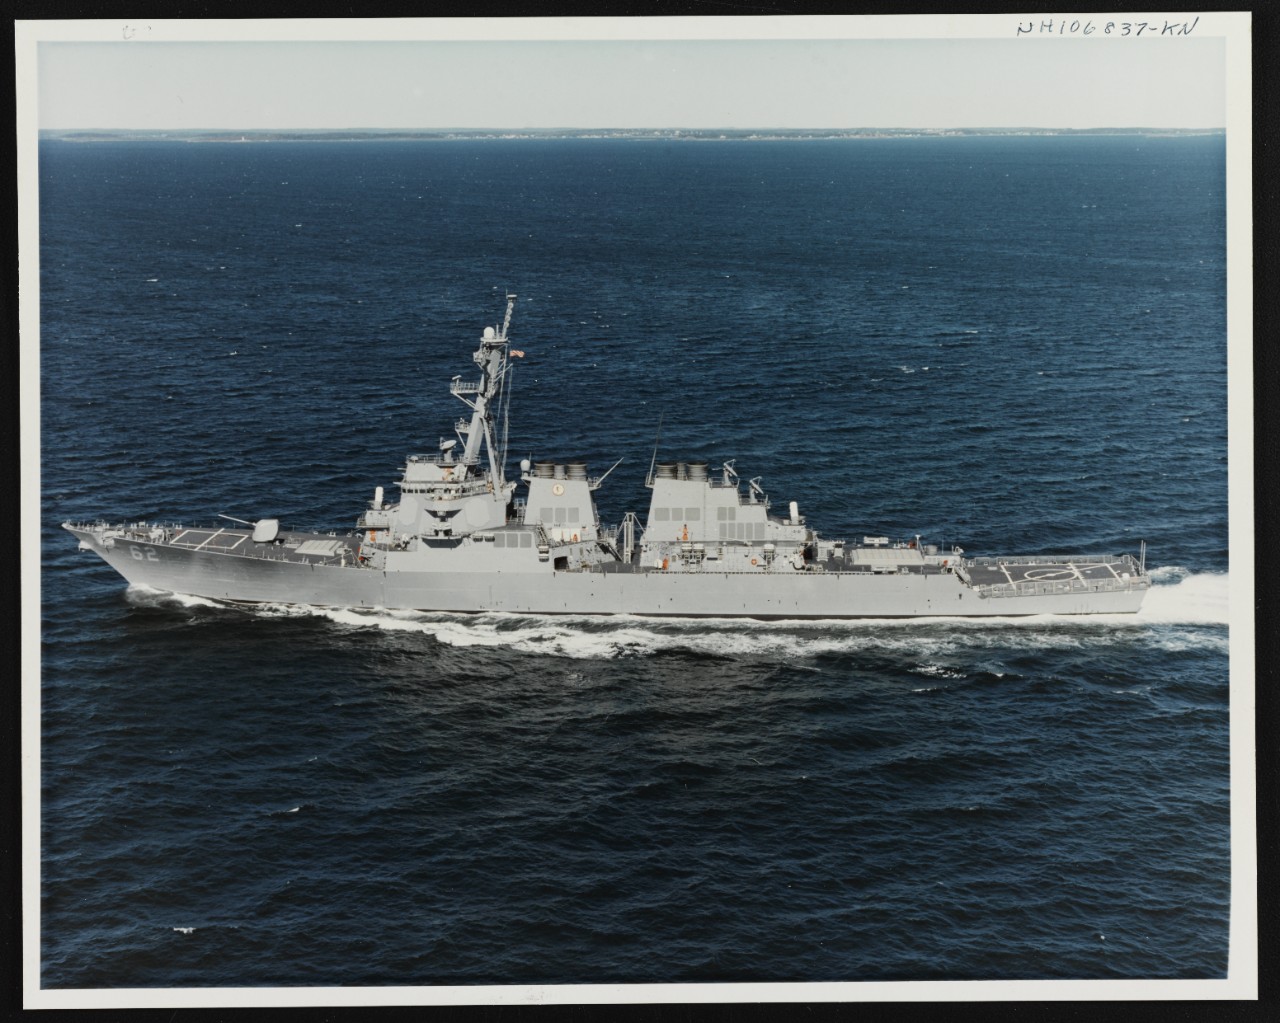 Photo # NH 106837-KN USS Fitzgerald